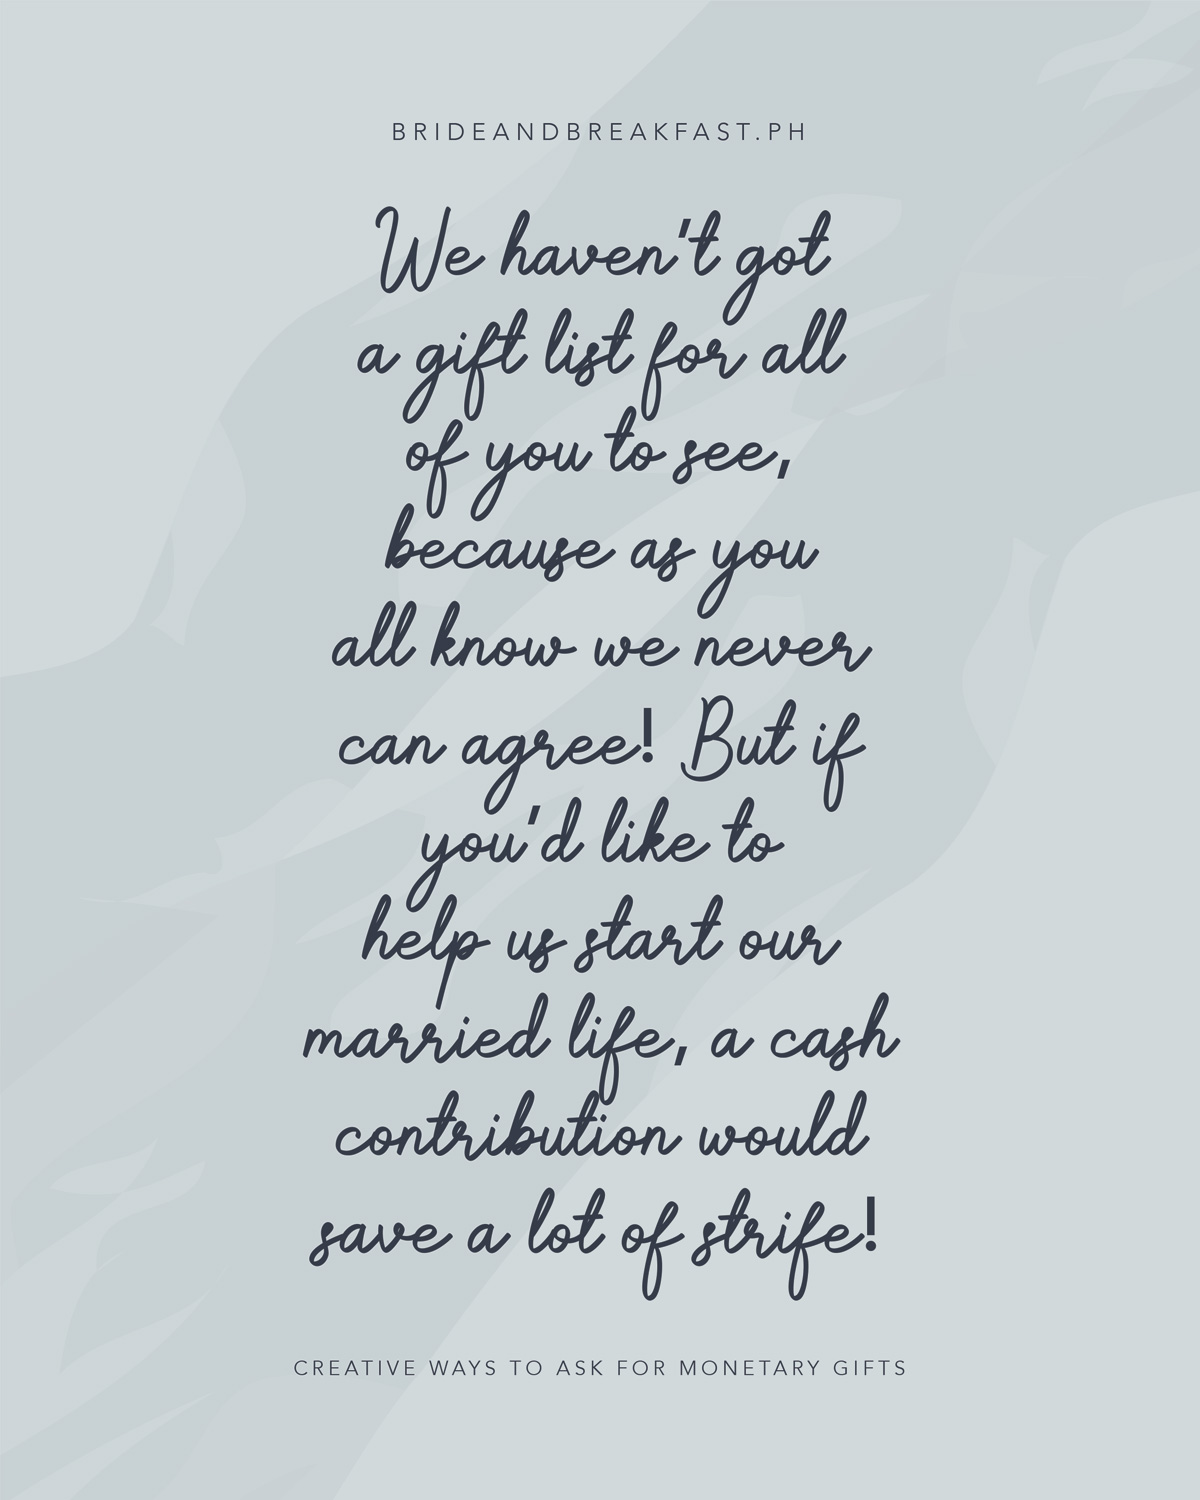 nie mamy dla was listy prezentów, bo jak wiecie nigdy się nie zgadzamy! Ale jeśli chcesz pomóc nam rozpocząć nasze życie małżeńskie, wkład gotówkowy zaoszczędzi wiele sporów!